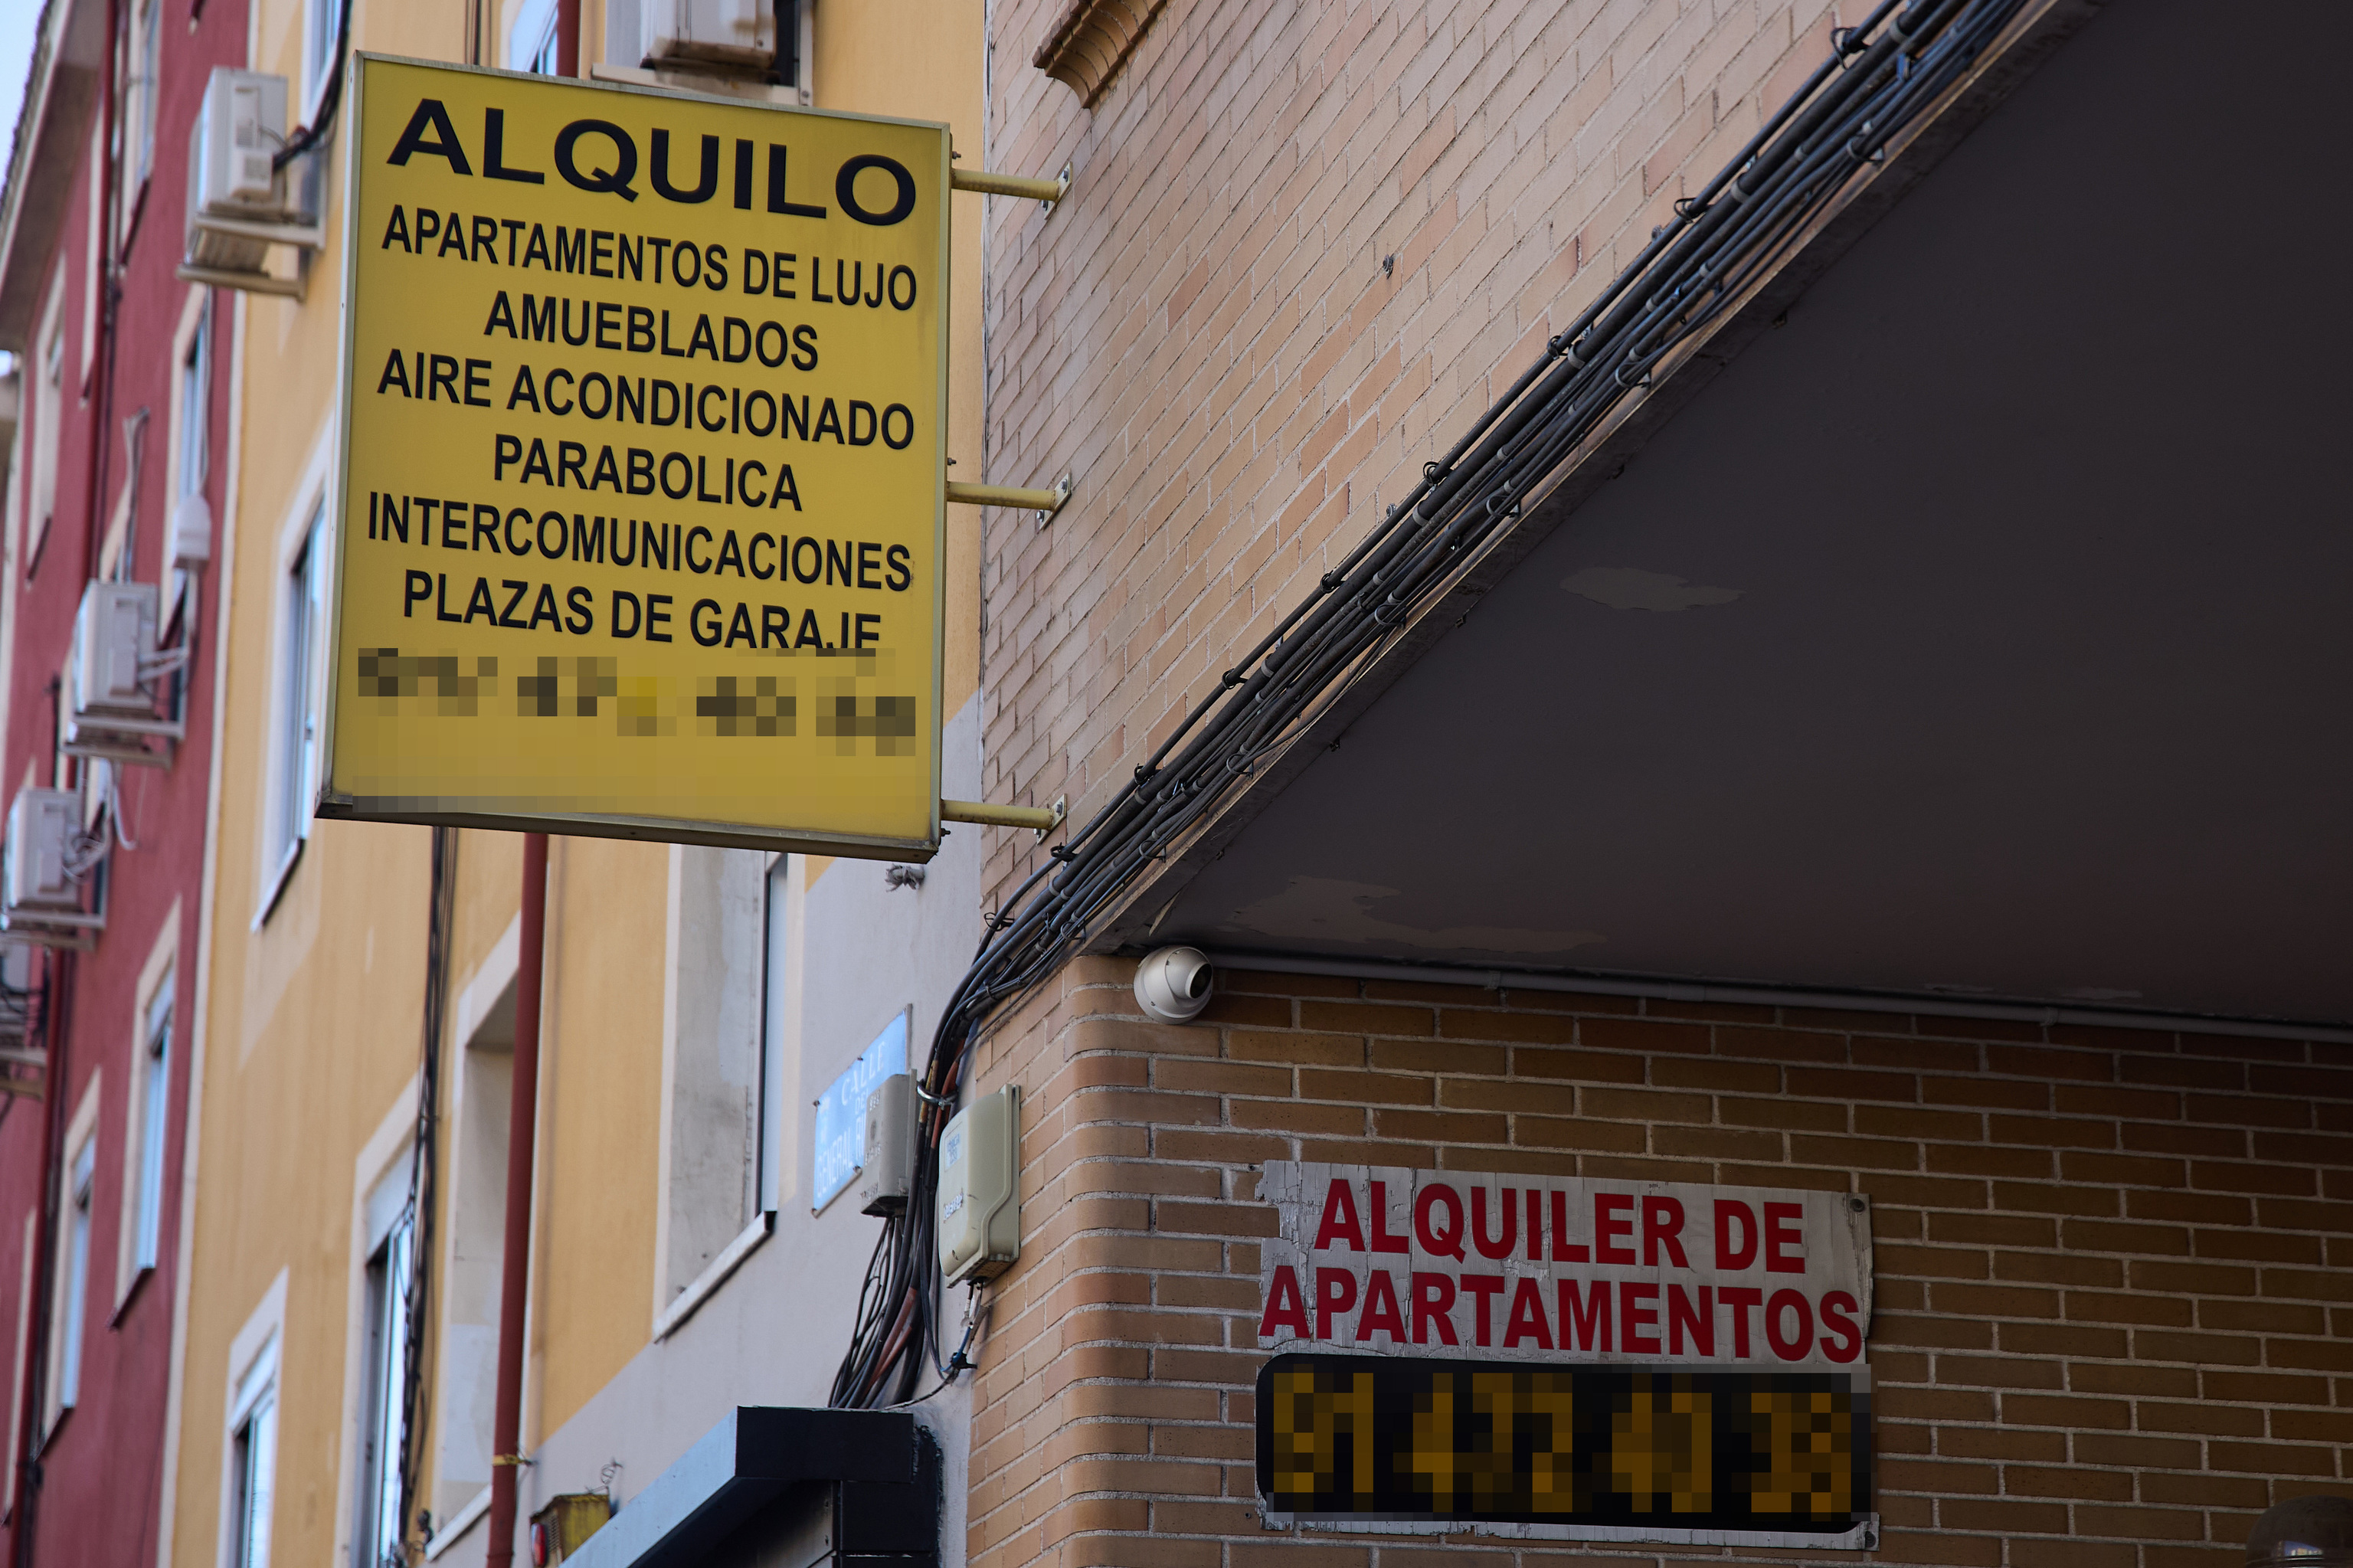 Cartel de alquiler en un edificio de Madrid.